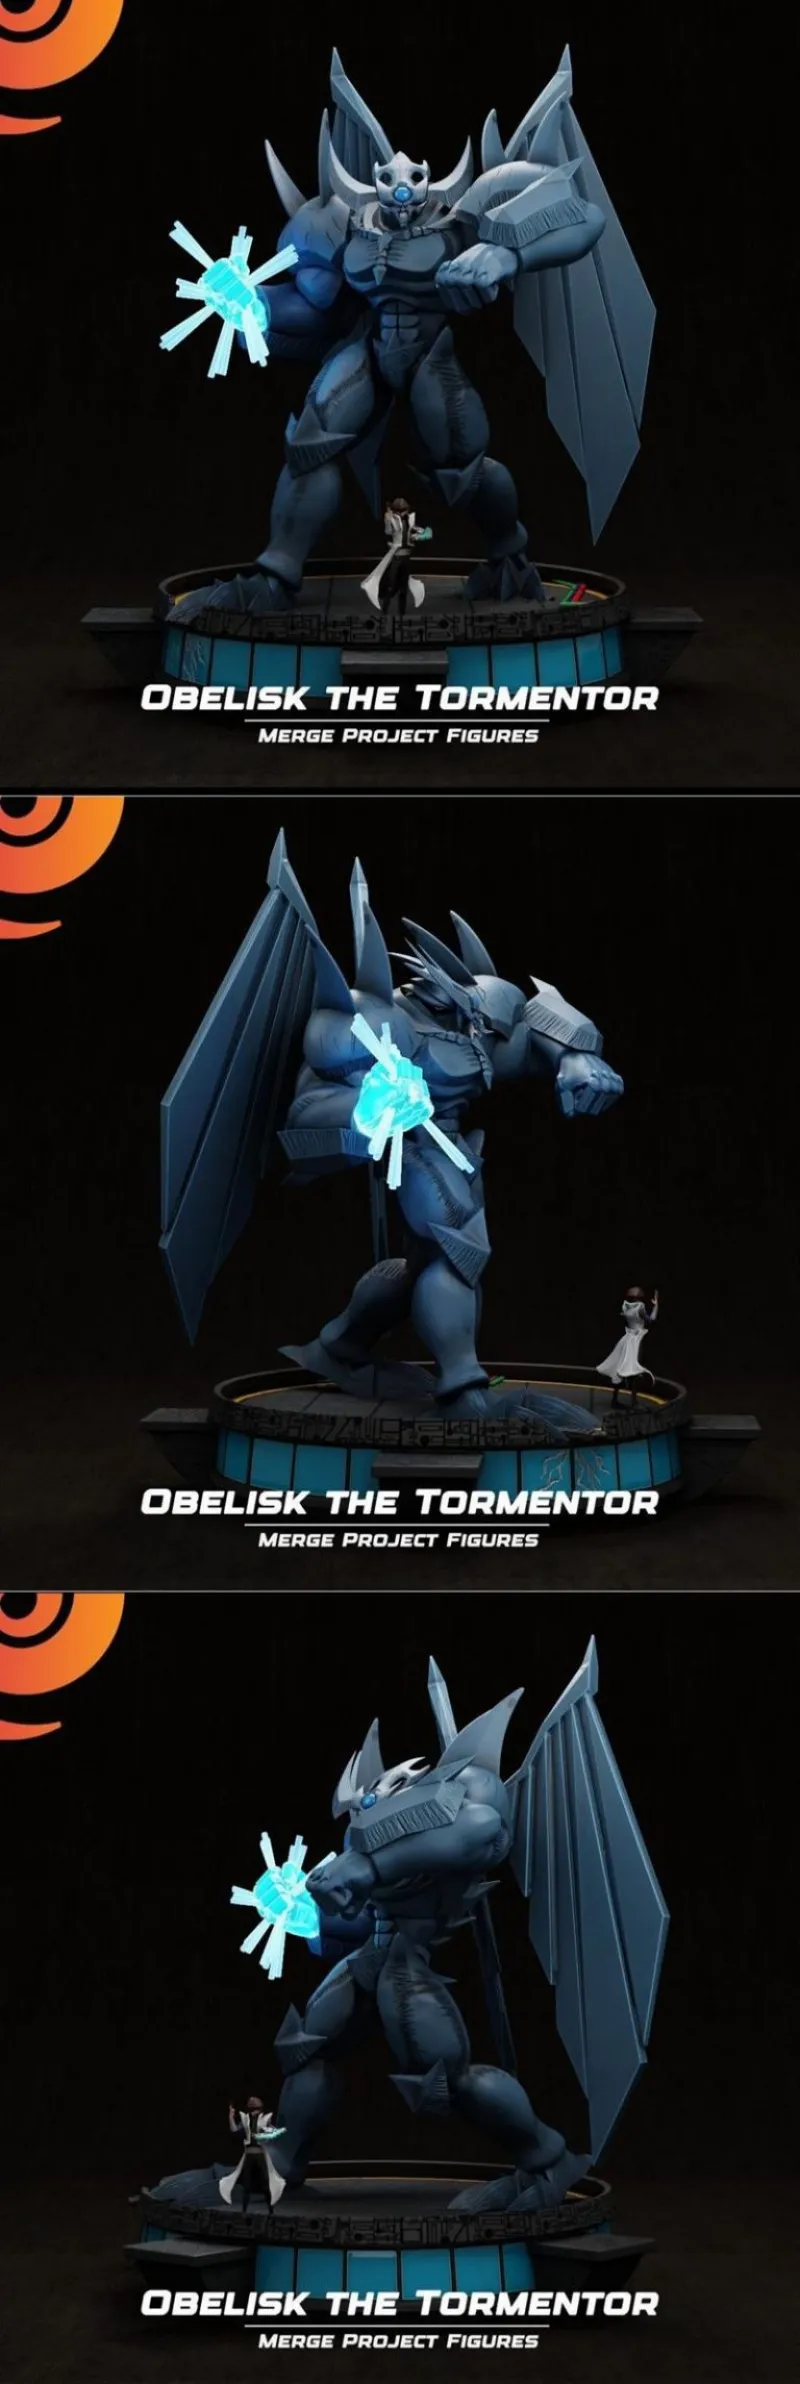 Obelisk the Tormentor